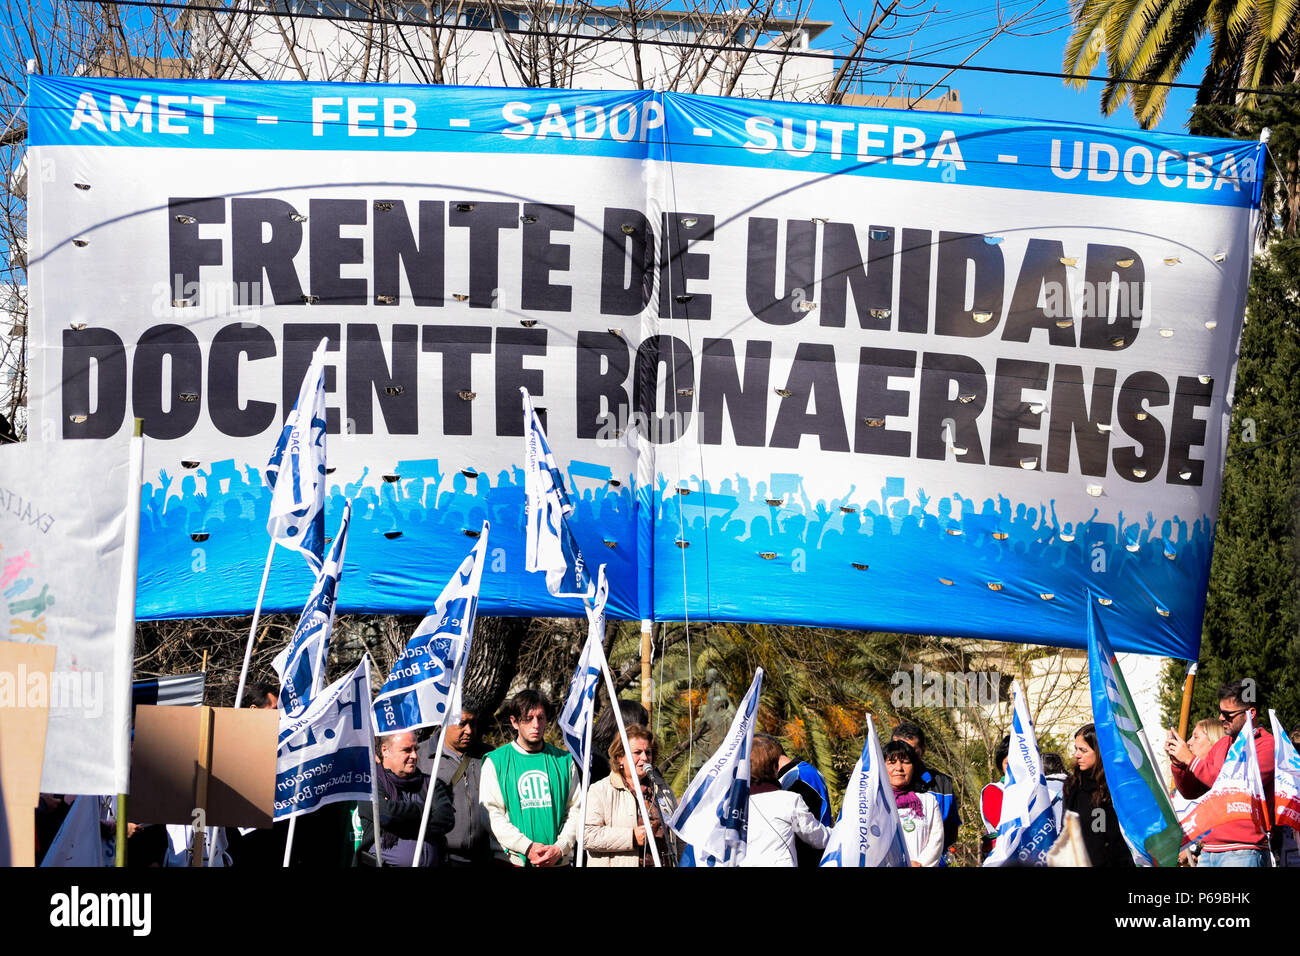 Ein Banner sagen, Vorderseite des Boanarense Lehreinheit. Union der Pädagogen aus der Provinz Buenos Aires Protest an das Ministerium für Bildung in La Plata für eine Gehaltserhöhung von 30 % und einer Aufhebung in der Resolution 1736, erfordern sie auch eine Generalstreik von allen Pädagogen während des Protestes. Stockfoto